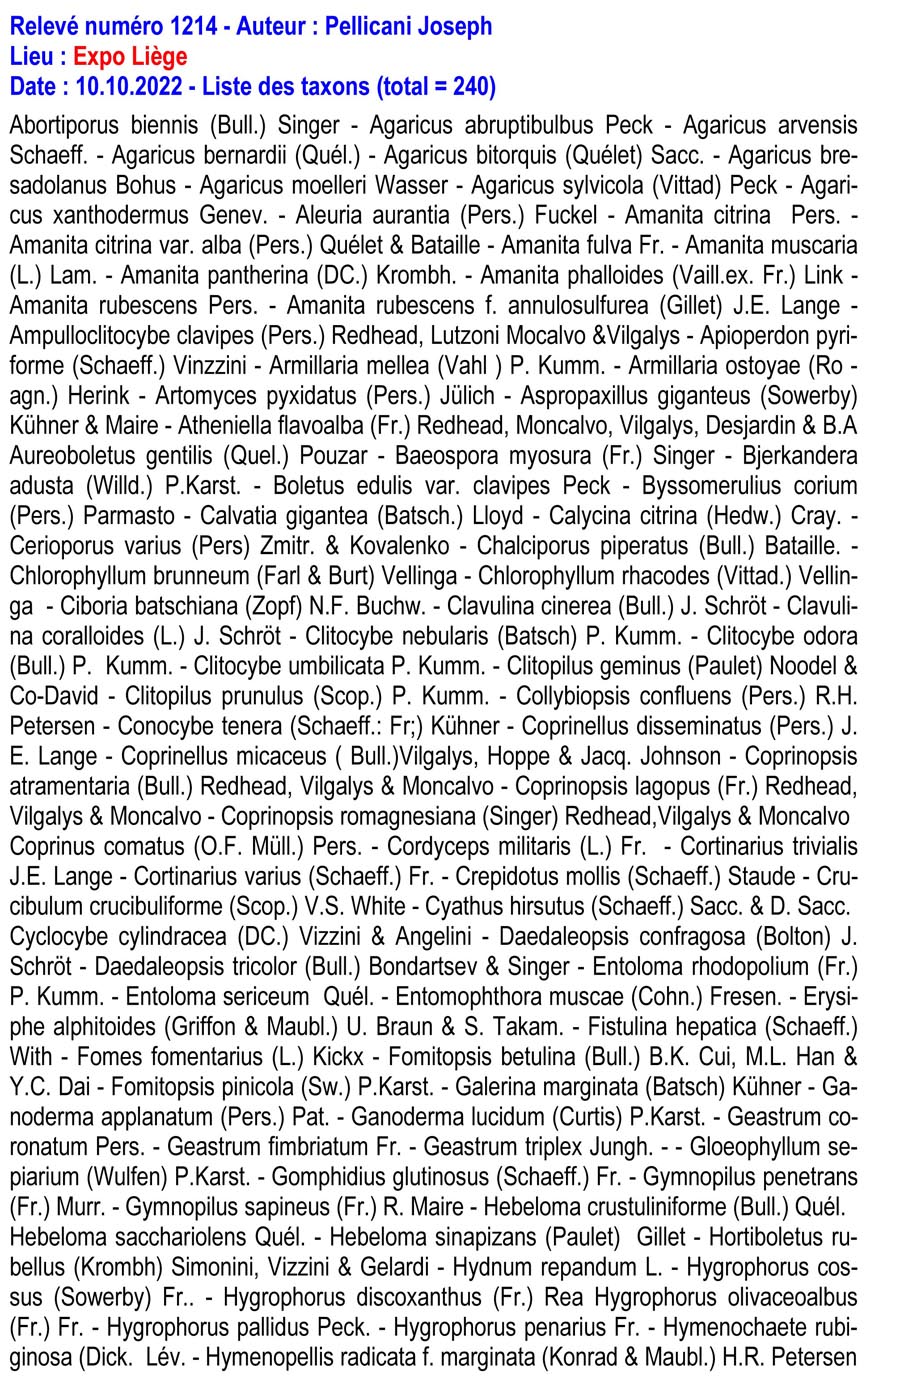 Groupe d’Inventaire des champignons de Wallonie, liste